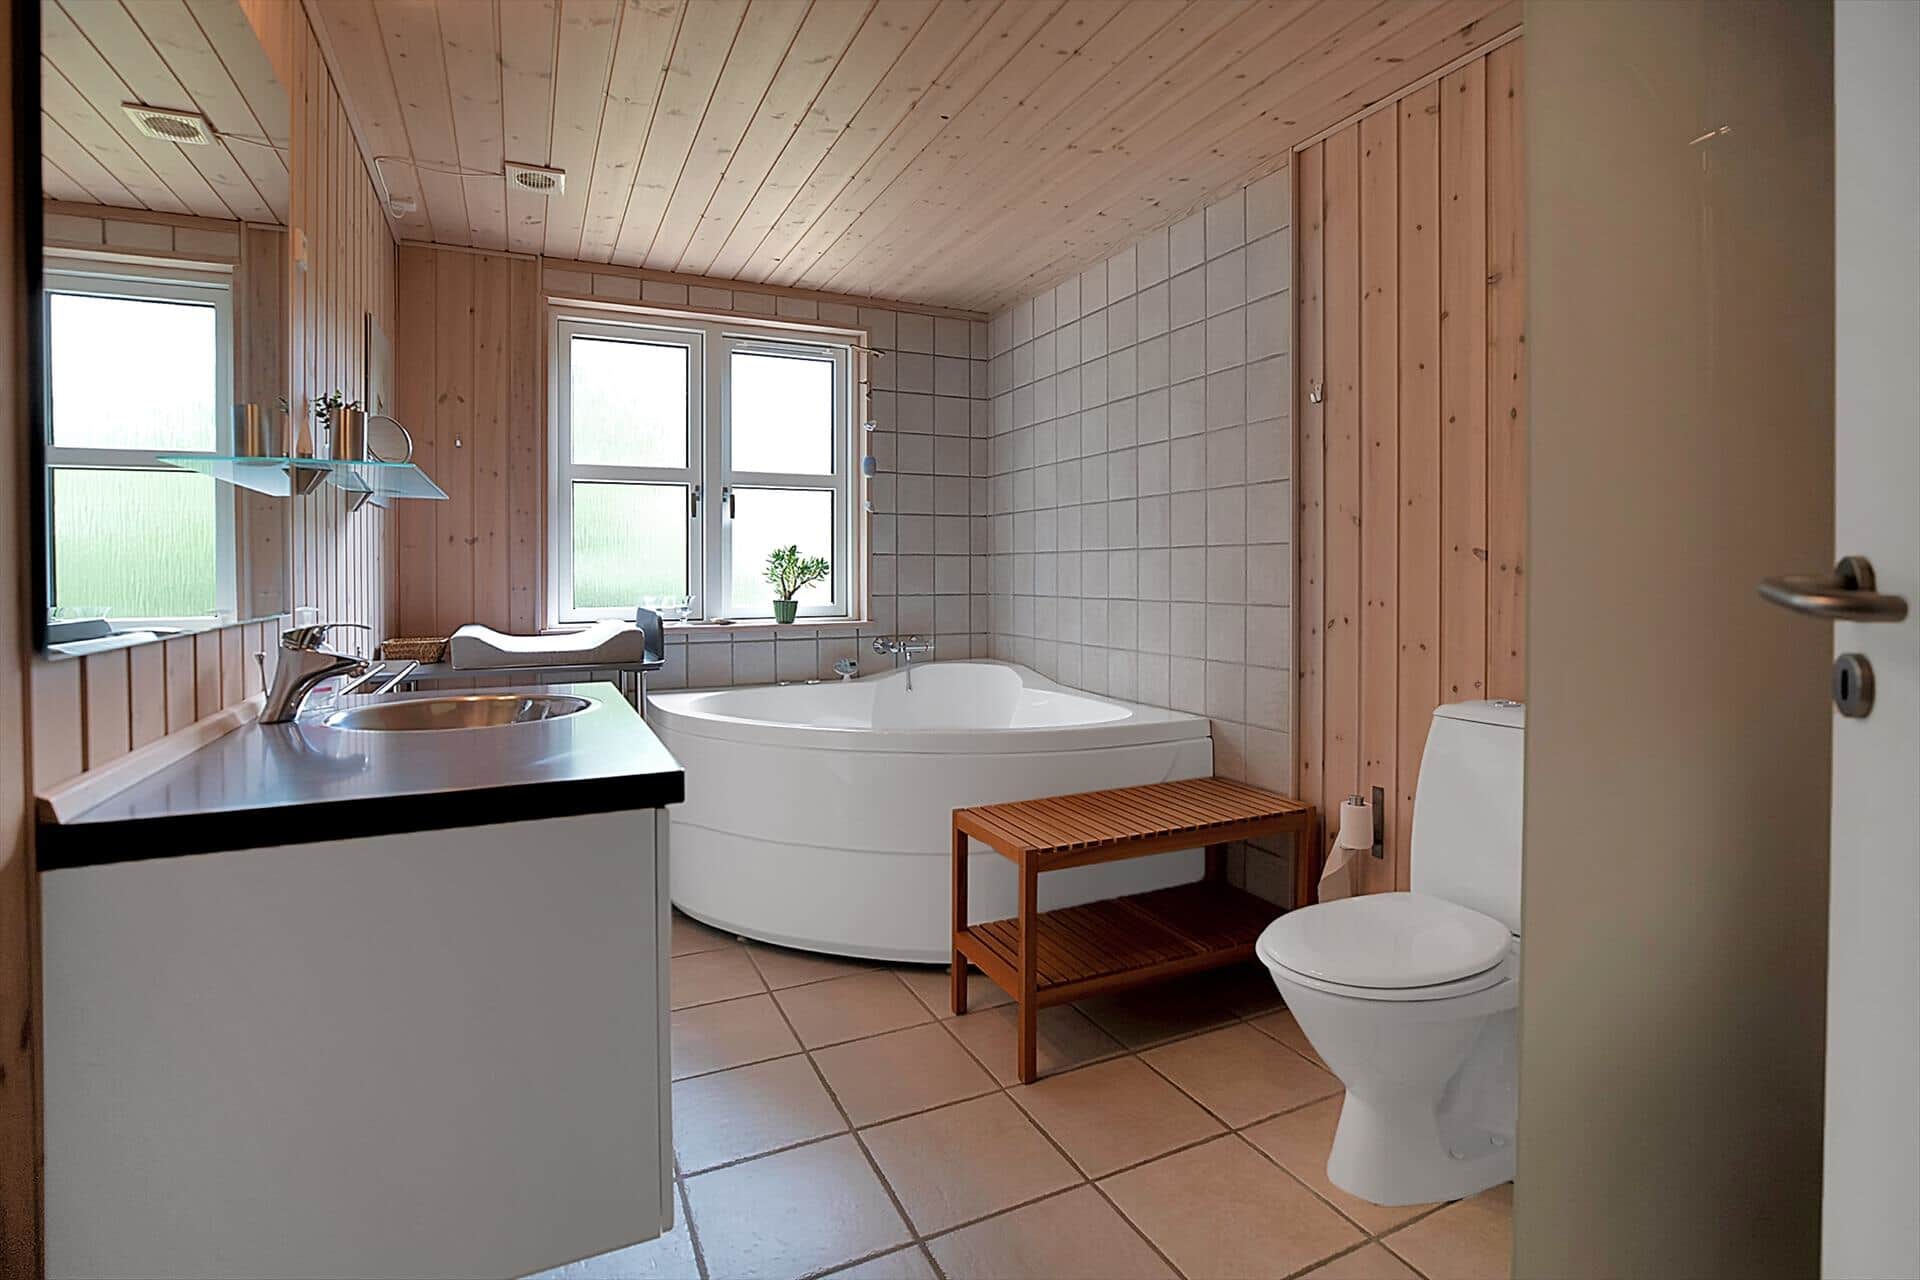 Bathroom 1 Image 2-17 Holiday-home 13415, Havsbjergvej 15, DK - 4573 Højby